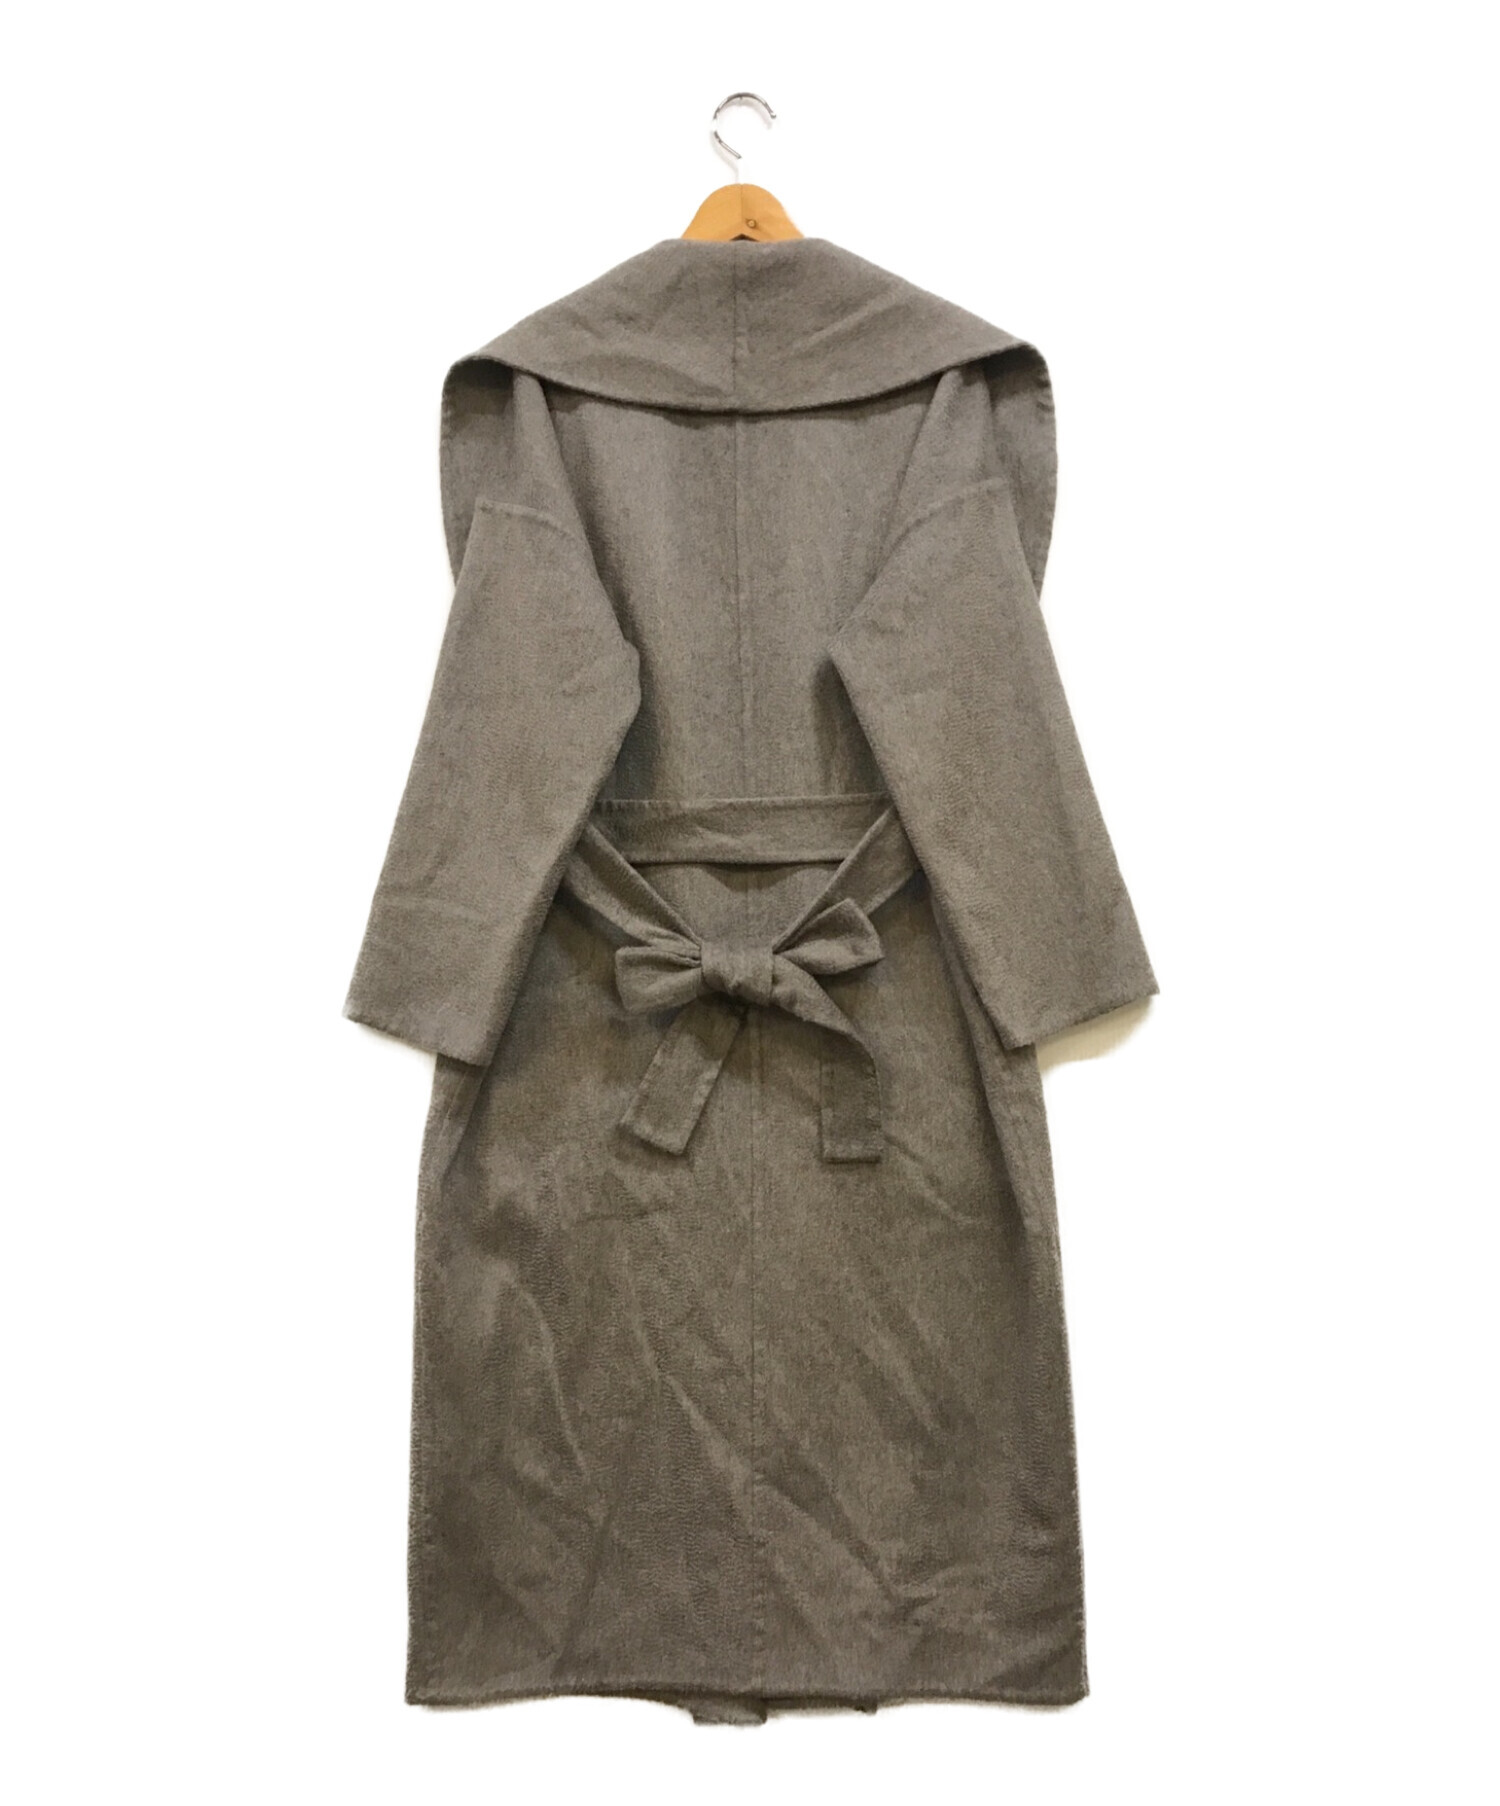 PROTAGONISTプロタゴニスト ドゥーズィエムクラス購入Gown コート(メルトンガウンコート)【XS】【LCTA70821】